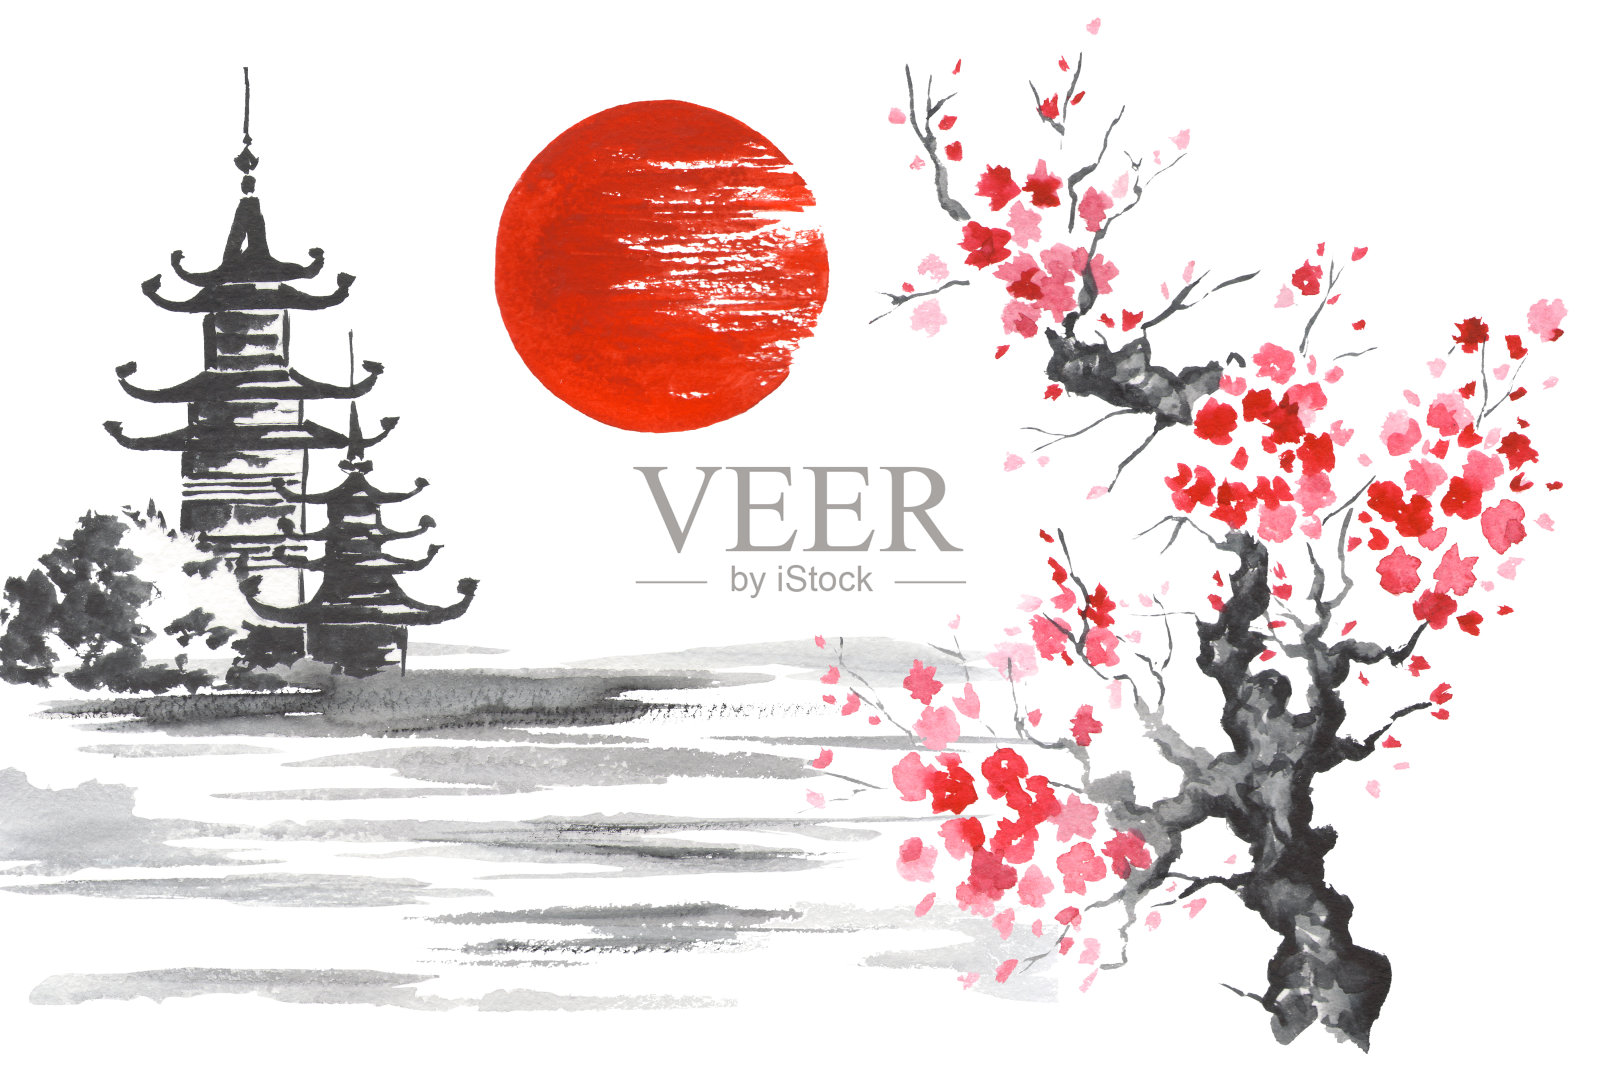 日本传统绘画Sumi-e艺术樱花太阳寺插画图片素材